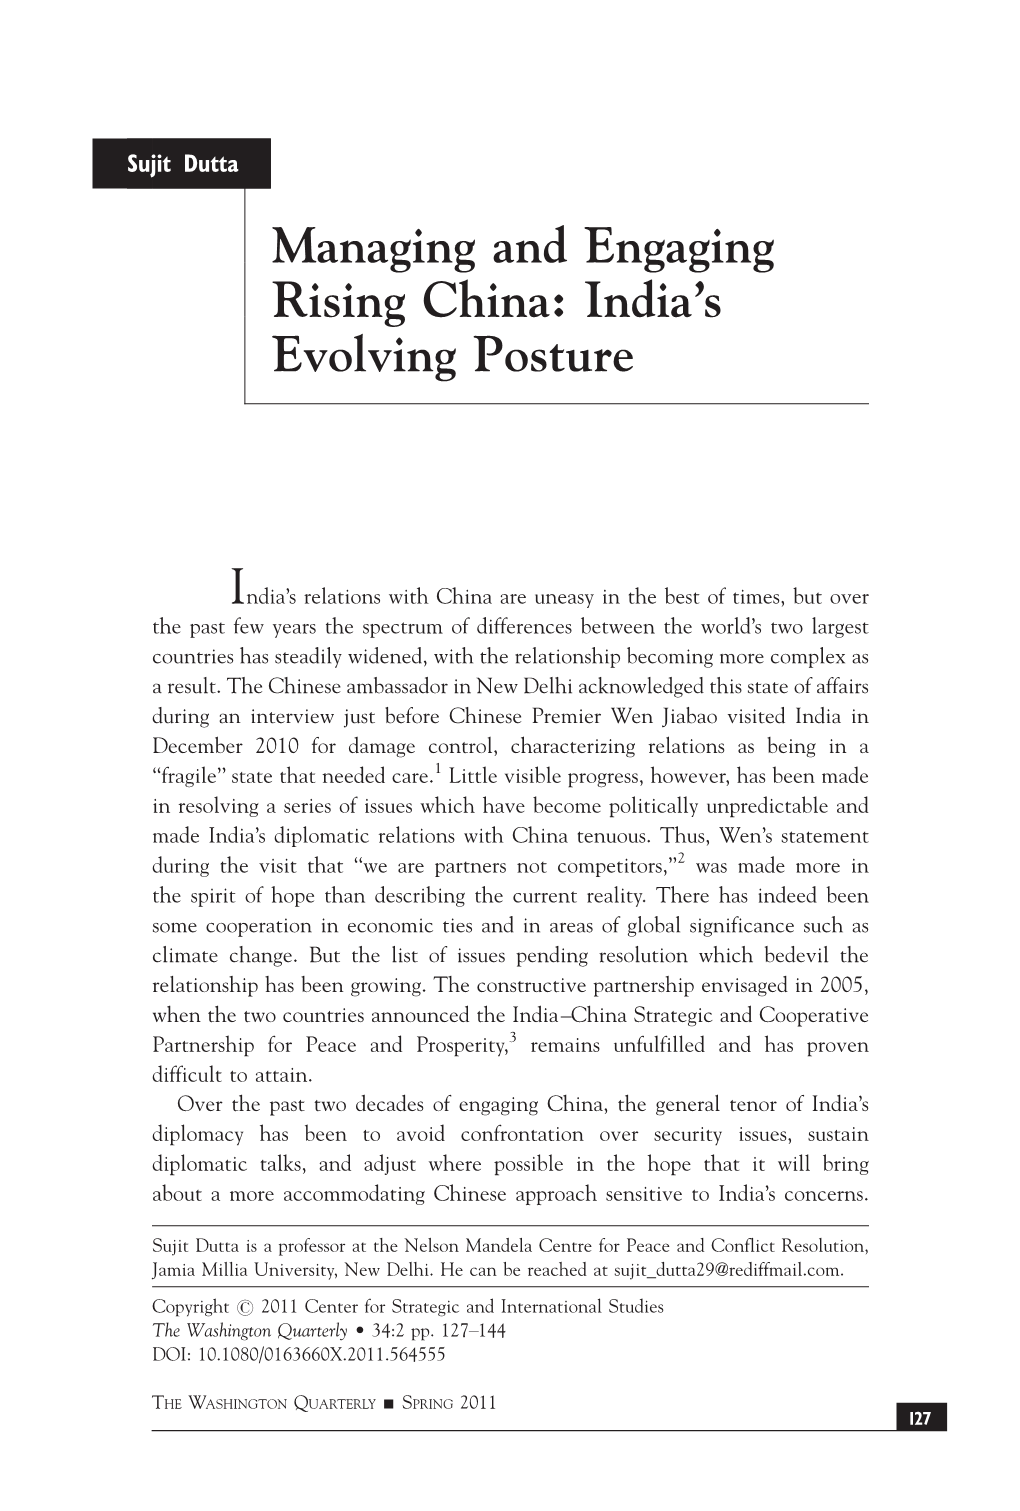 Managing and Engaging Rising China: India's Evolving Posture